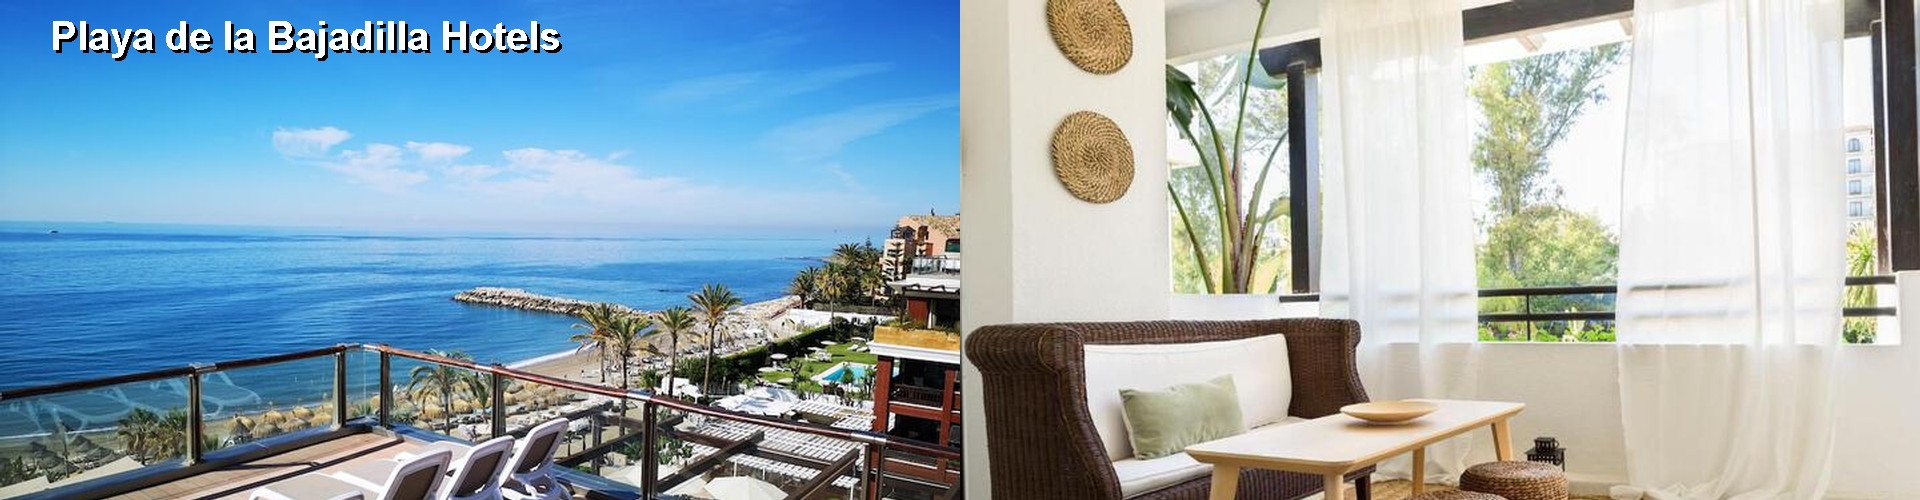 5 Best Hotels near Playa de la Bajadilla